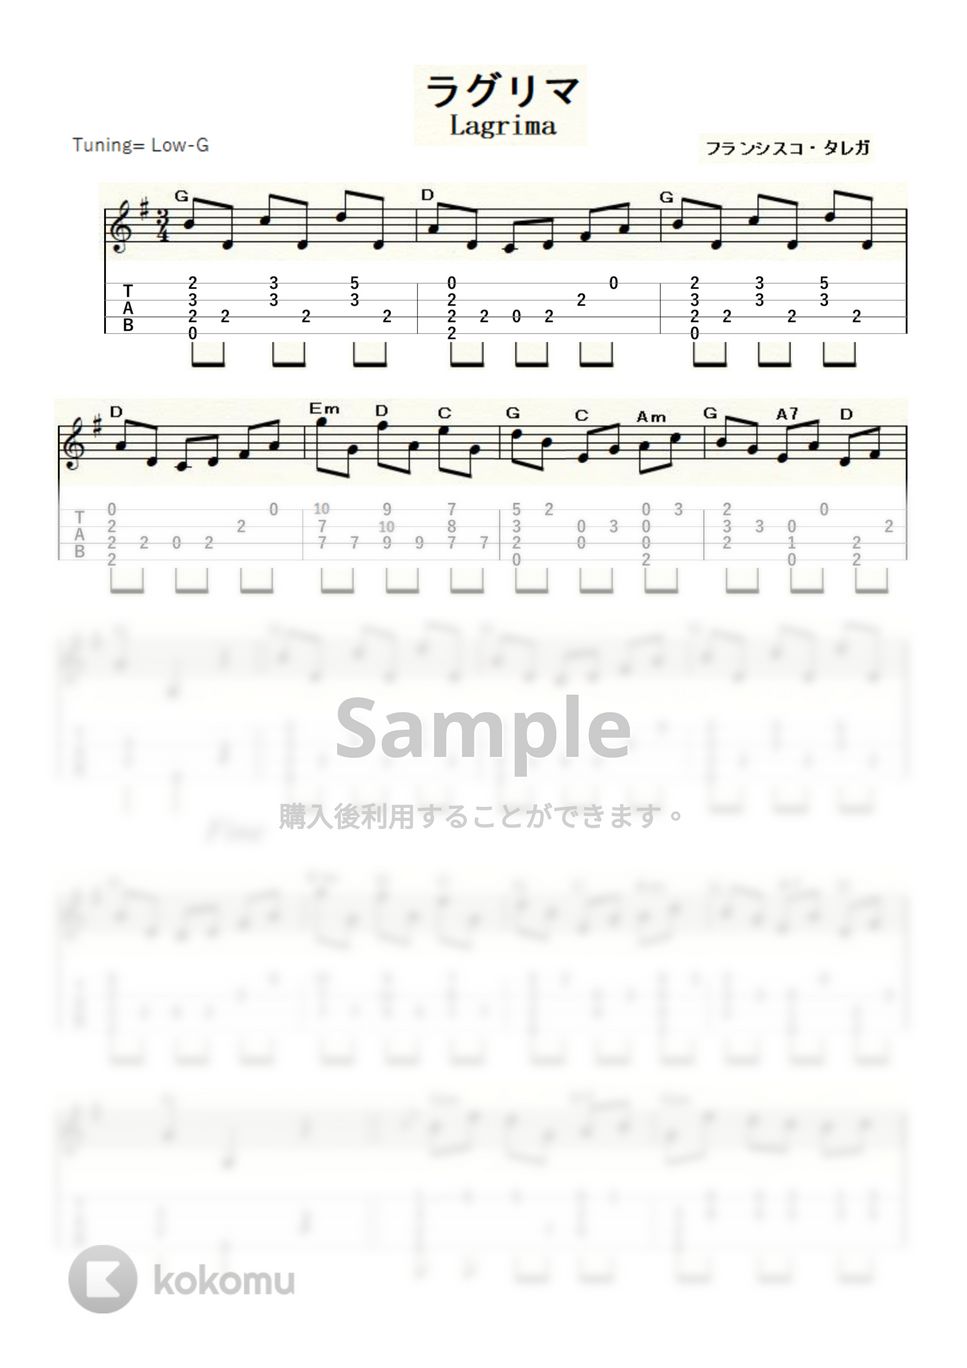 フランシスコ・タレガ - ラグリマ (ｳｸﾚﾚｿﾛ/Low-G/中級) by ukulelepapa